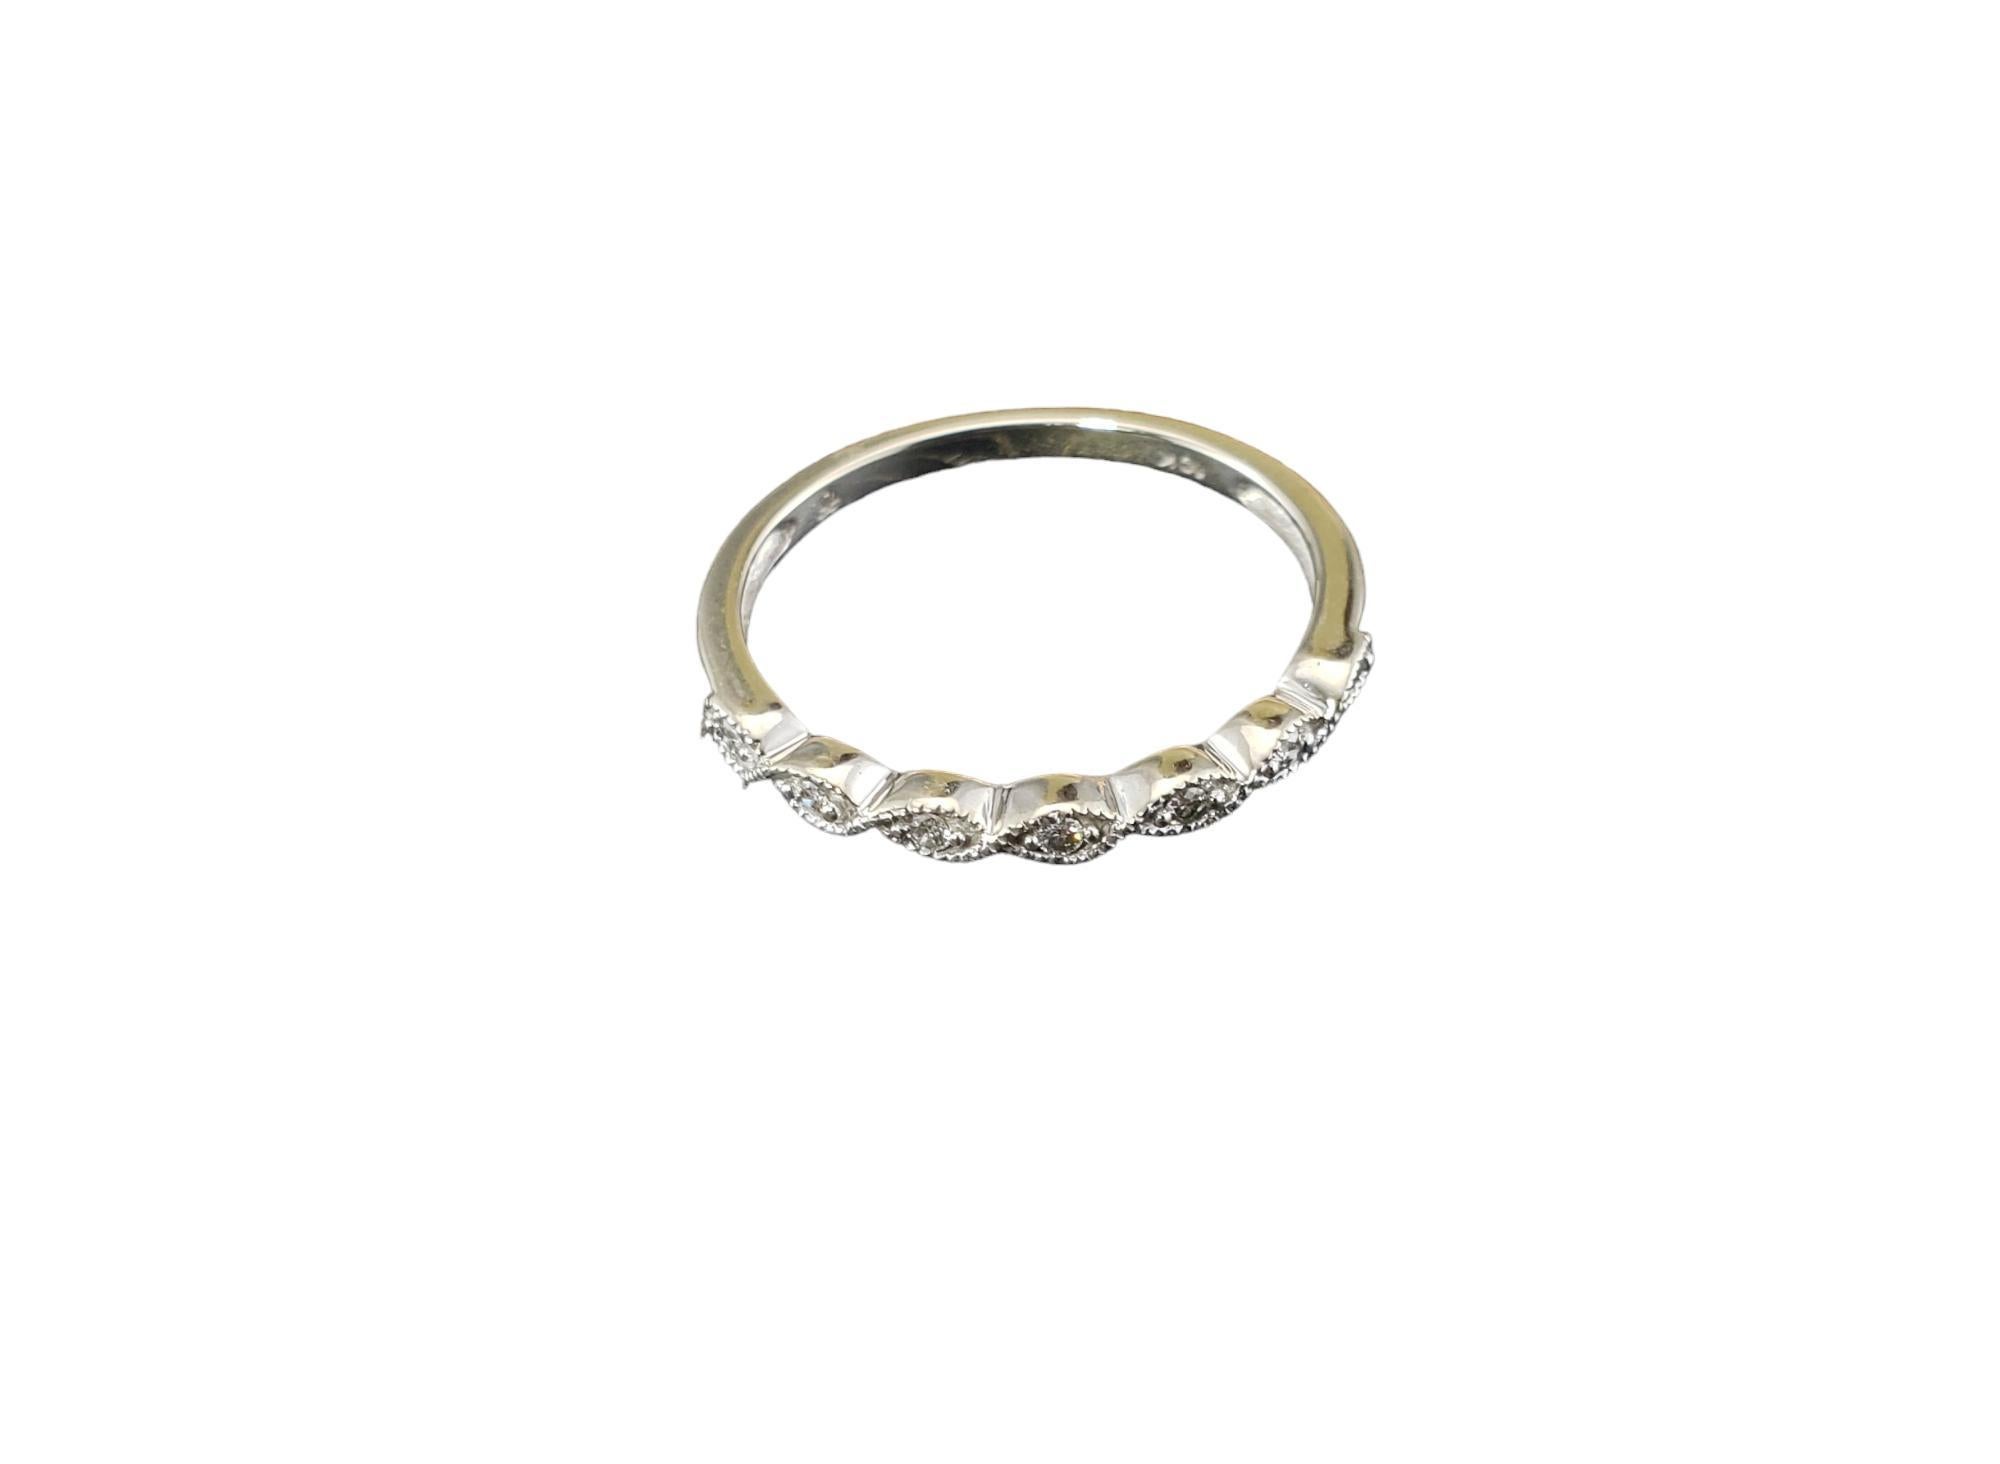 Vintage 10K White Gold Diamond Band Ring Taille 7-

Cet élégant bracelet présente sept diamants ronds de taille brillante sertis dans de l'or blanc 10K aux détails minutieux.
Largeur : 2 mm.

Poids total approximatif des diamants : 05 ct.

Couleur